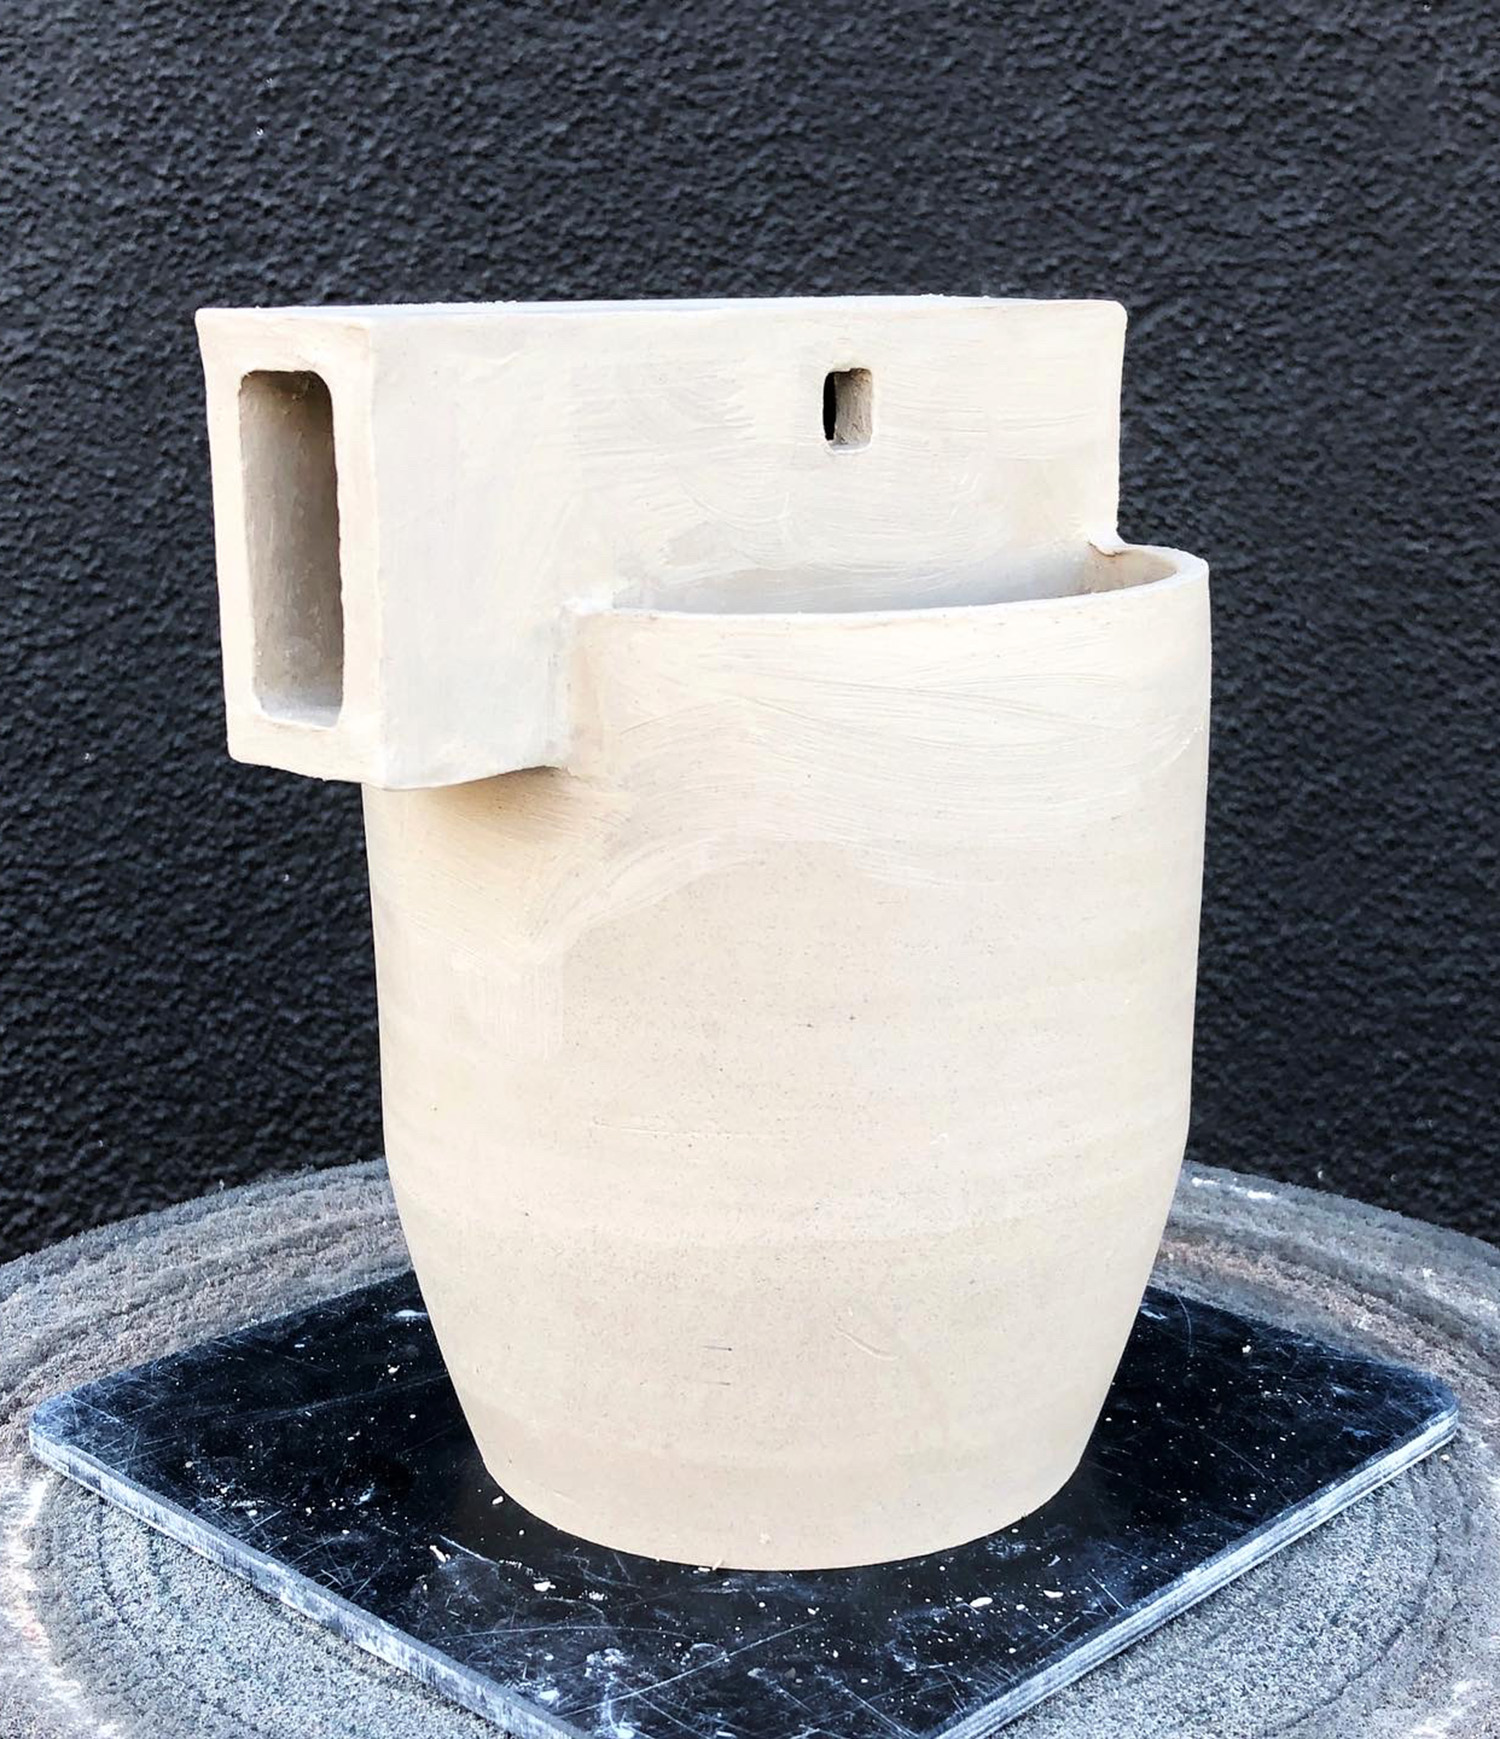 Ceramic Work in Progress by Jacqueline Wei